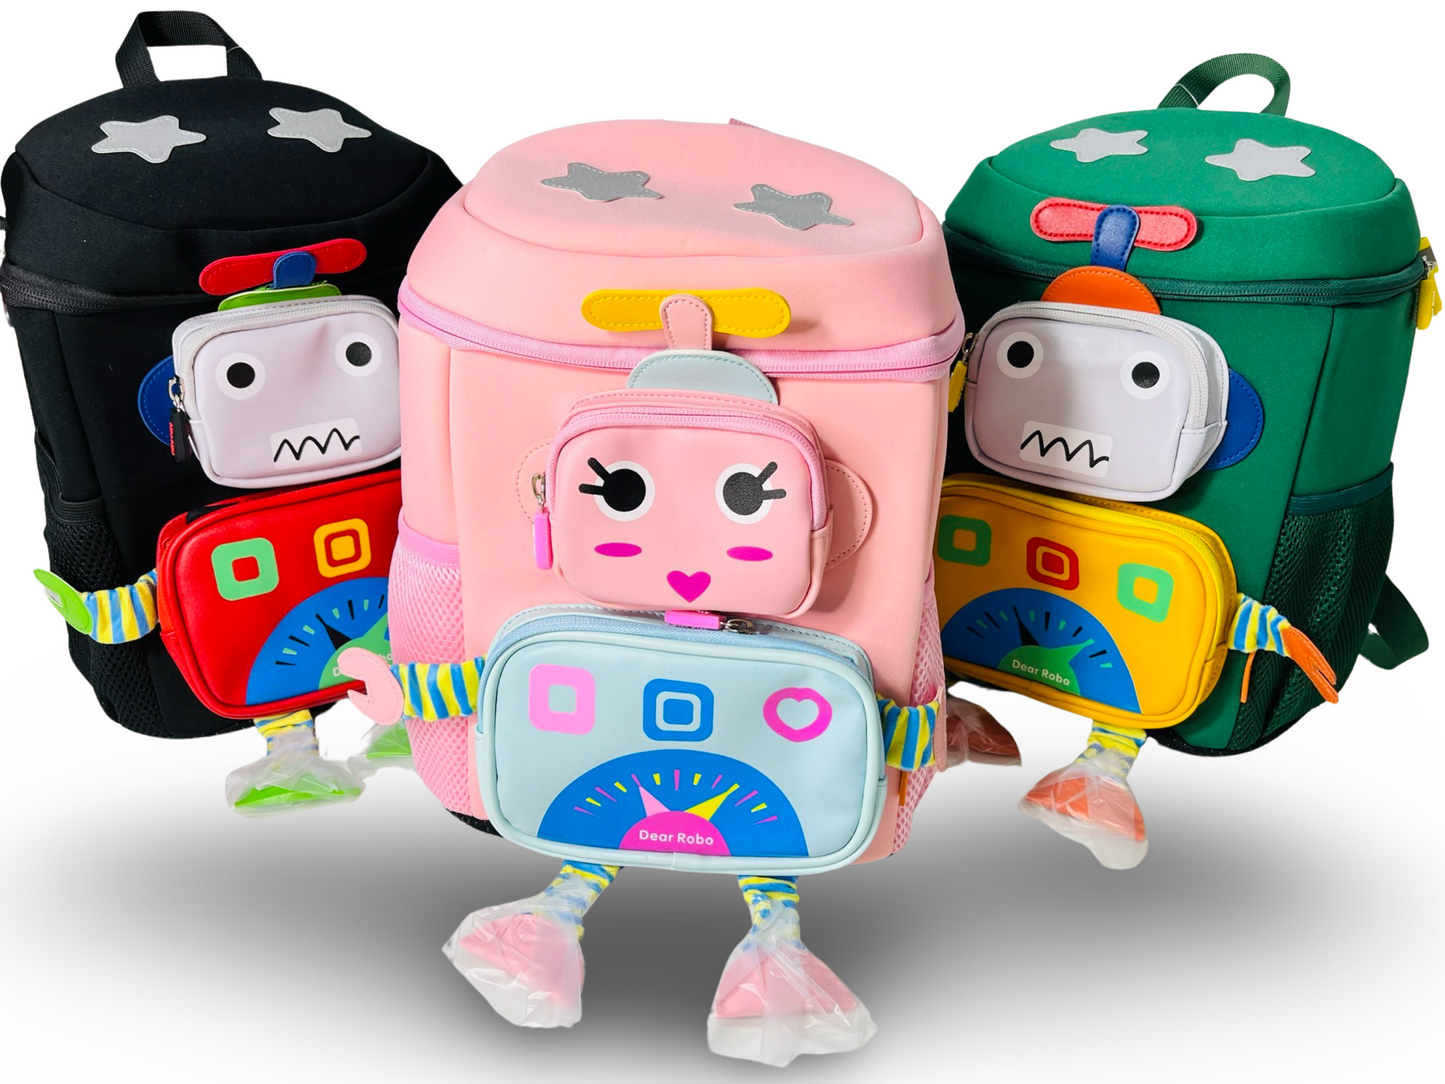 3D Robot Design School Bag with Large Capacity for Kindergarten/ Preschool/ Nursery kids